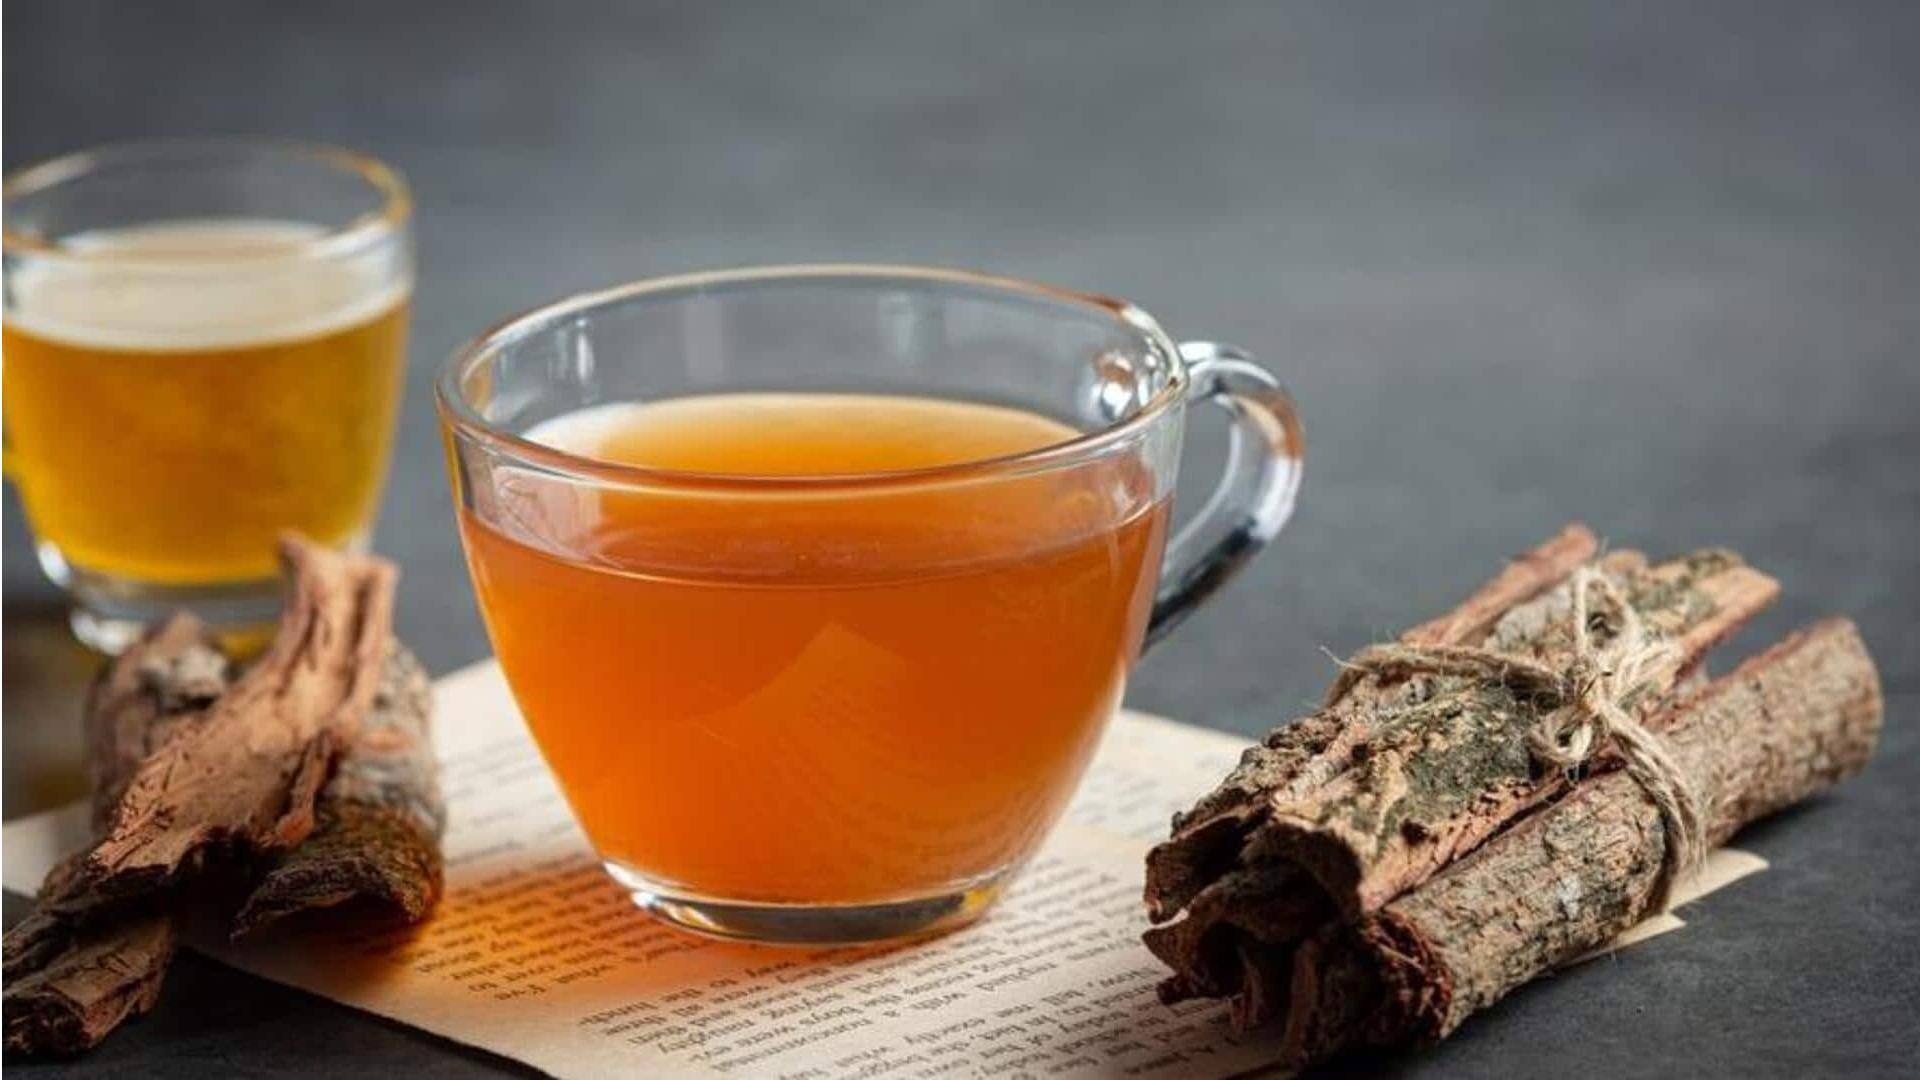 Nikmati teh licorice untuk keselarasan dan kenyamanan pencernaan di musim dingin ini